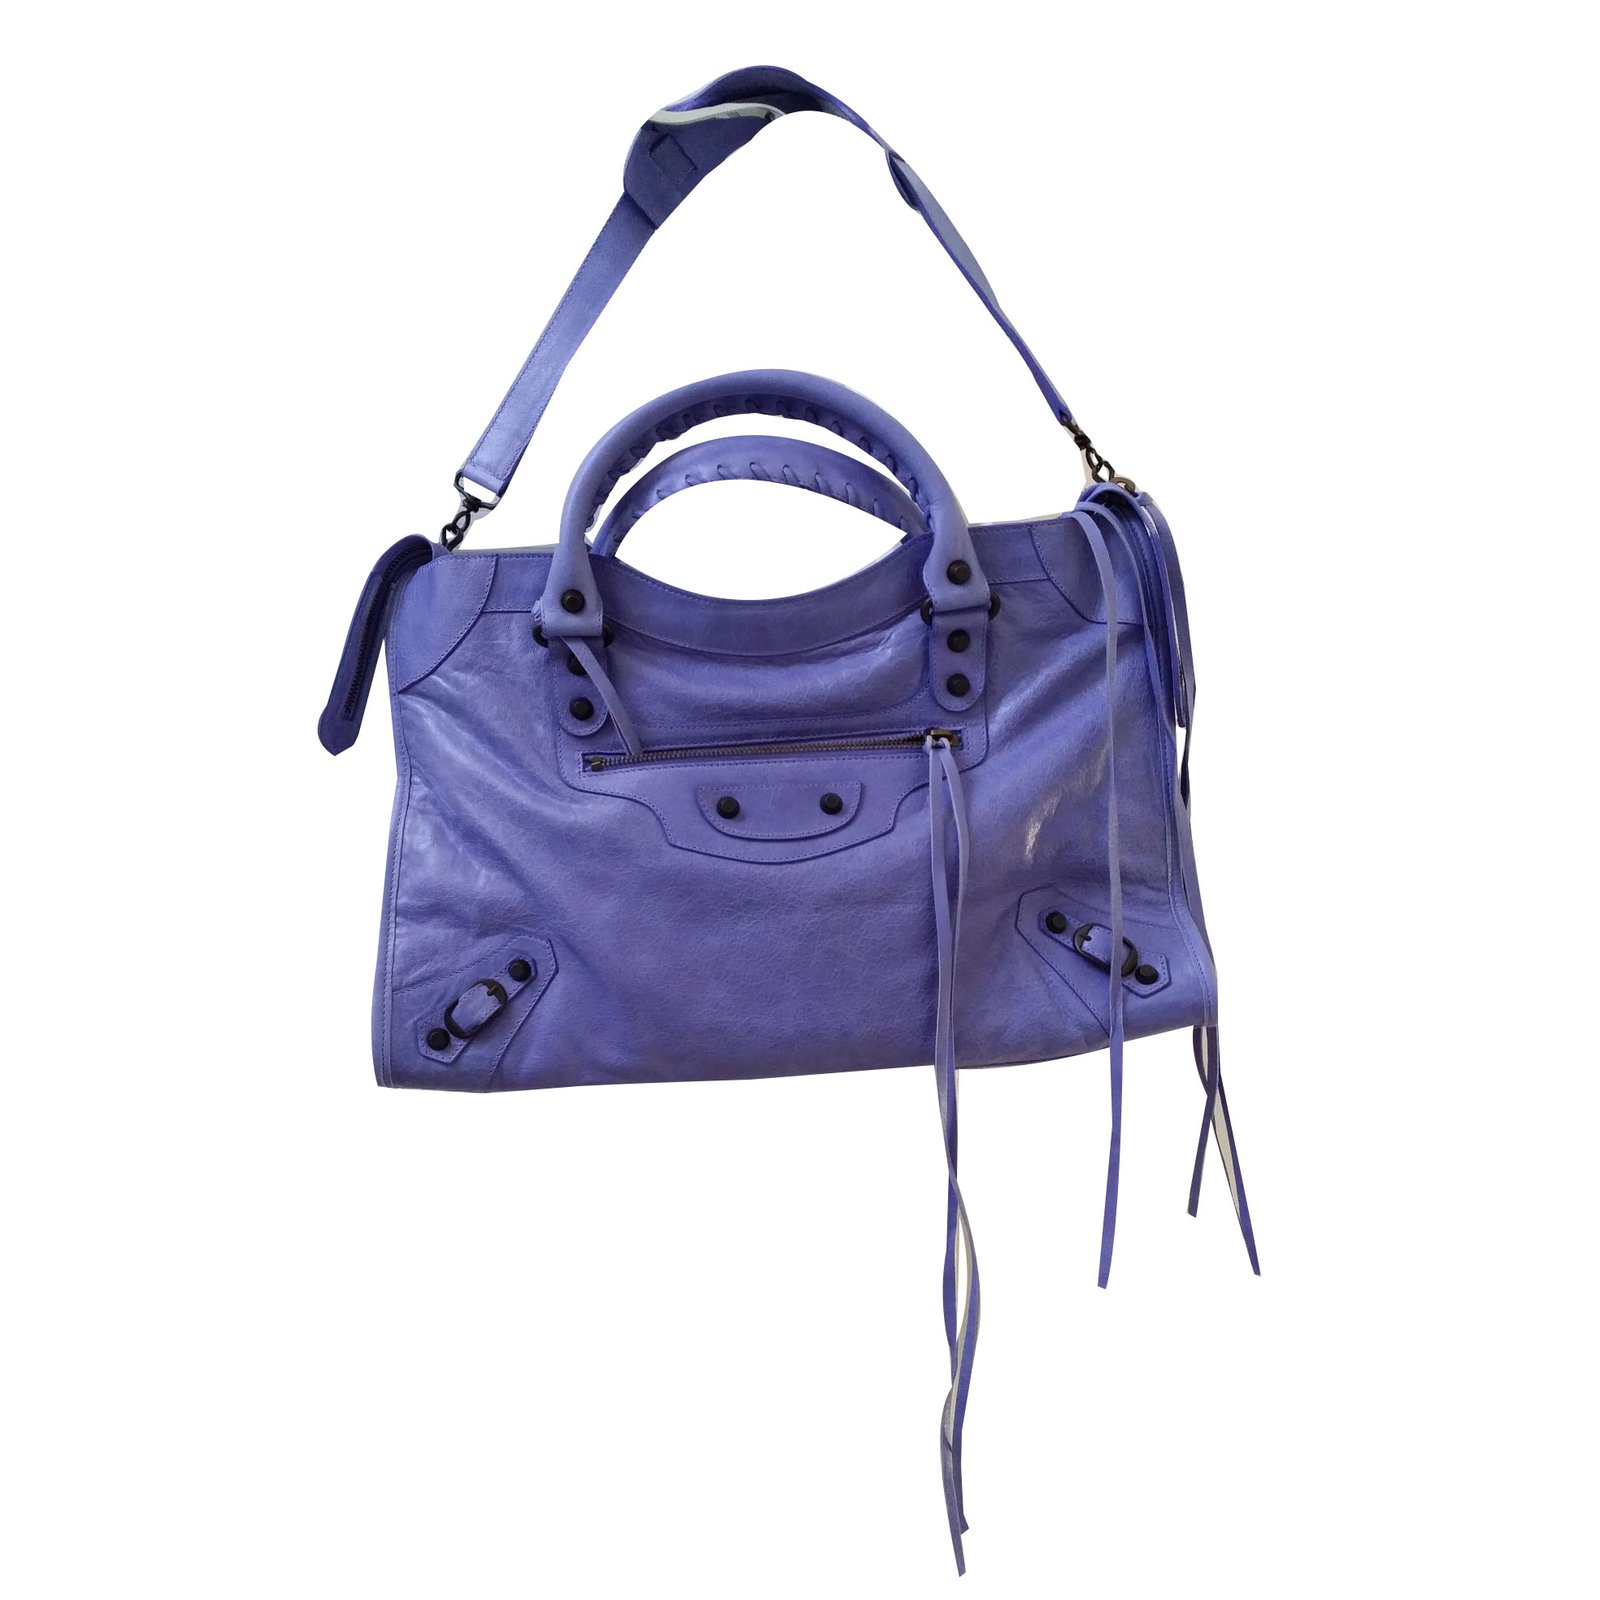 Balenciaga City Leather Handbag